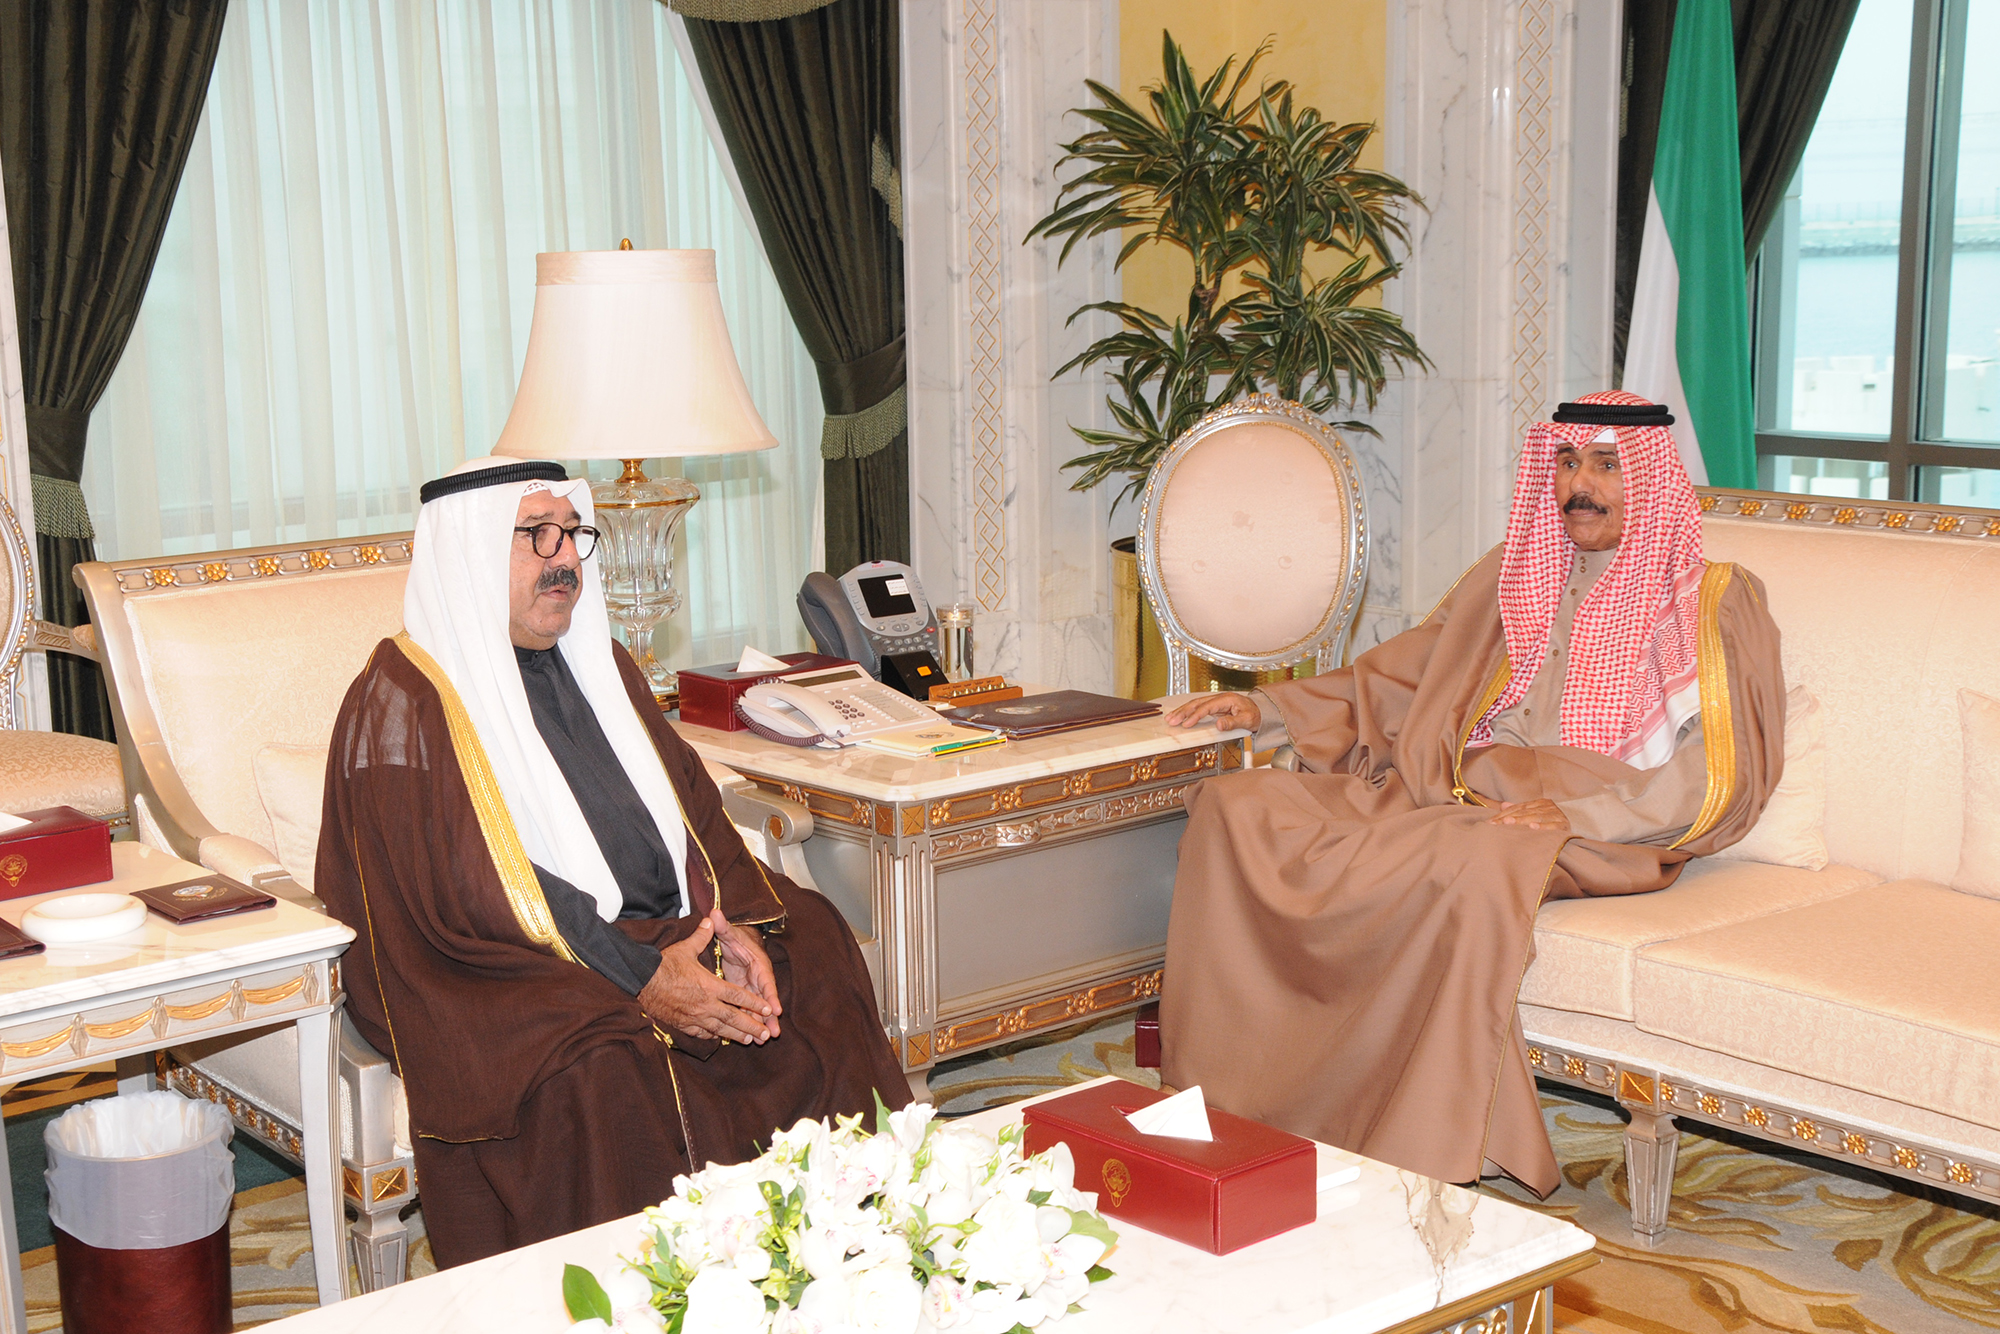 His Highness the Crown Prince Sheikh Nawaf Al-Ahmad Al-Jaber Al-Sabah met with First Deputy Prime Minister and Defense Minister Sheikh Nasser Al-Ahmad Al-Sabah